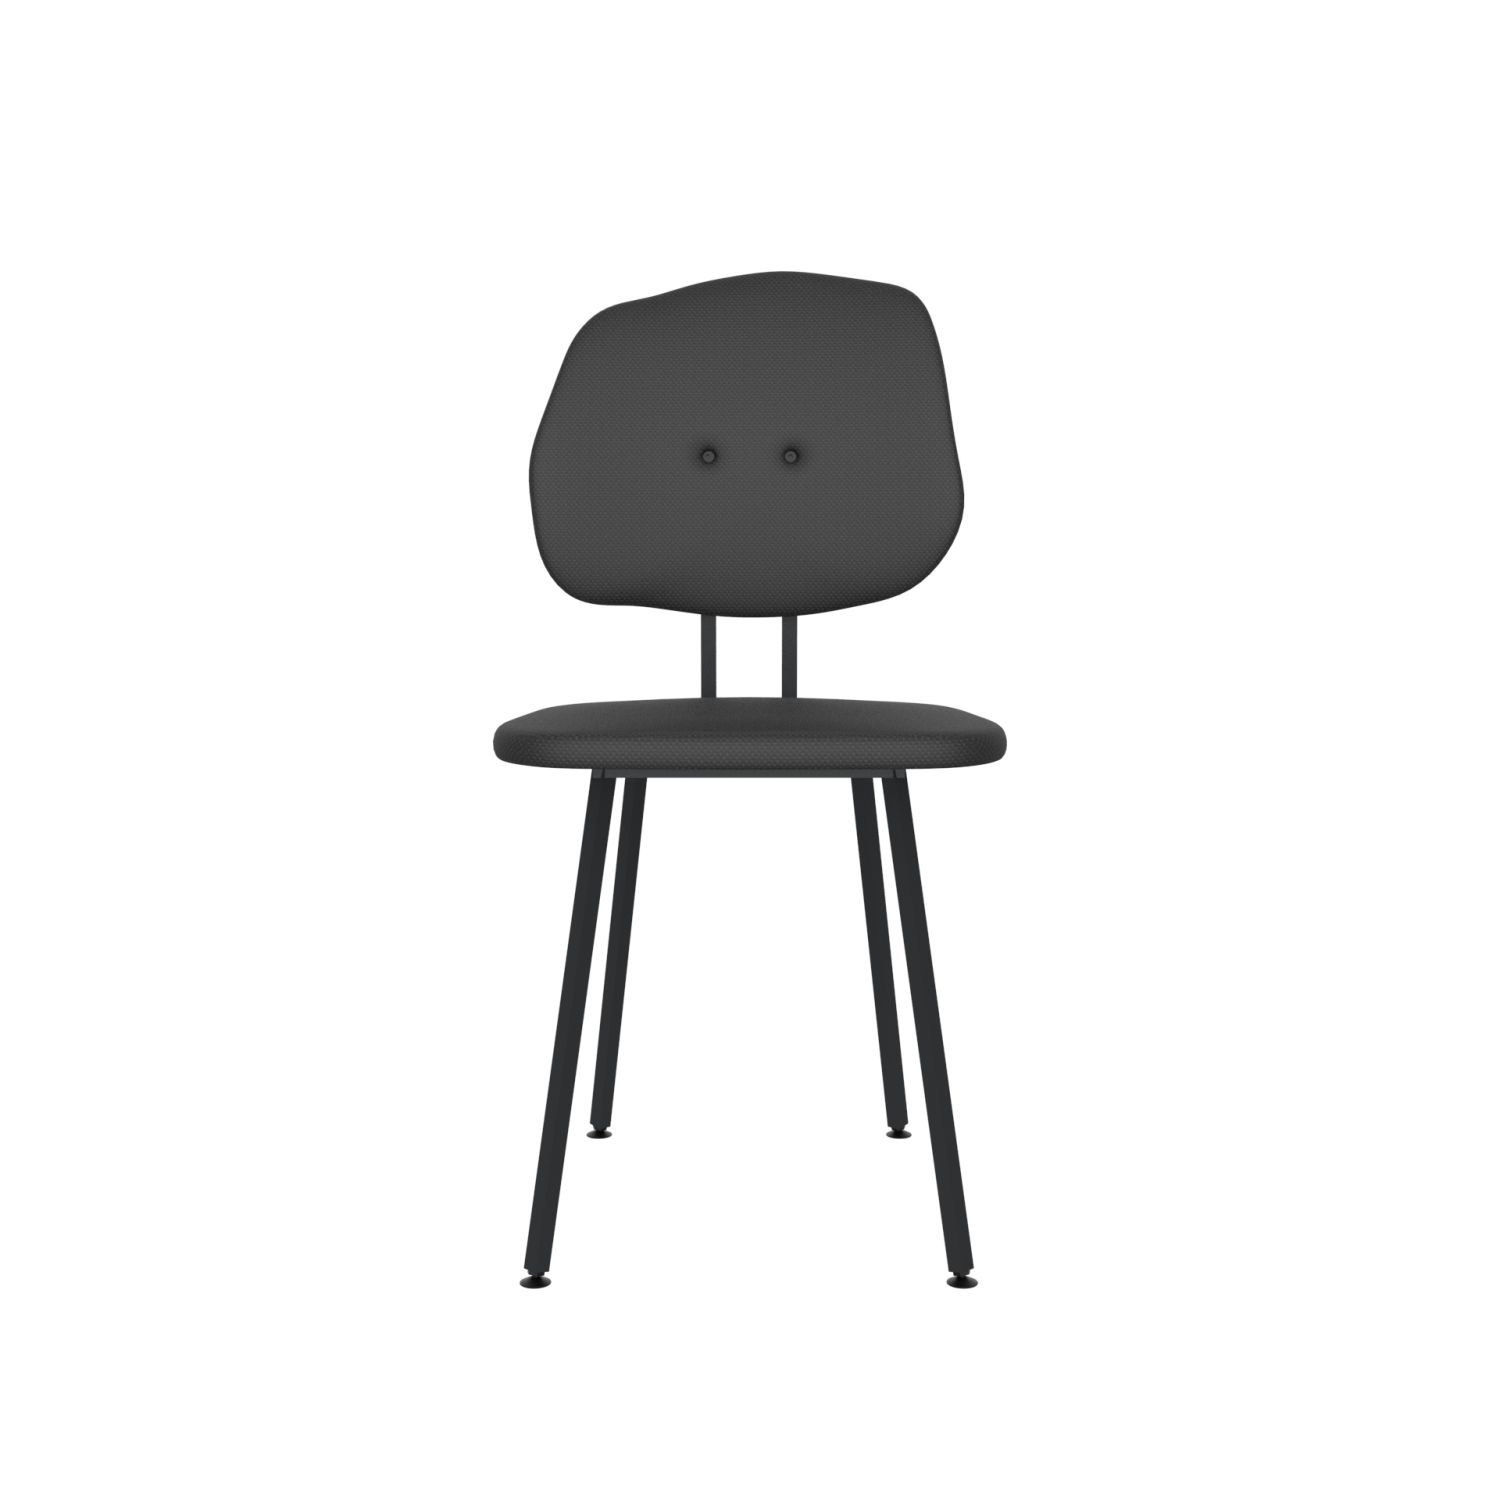 lensvelt maarten baas chair 101 not stackable without armrests backrest g havana black 090 black ral9005 hard leg ends